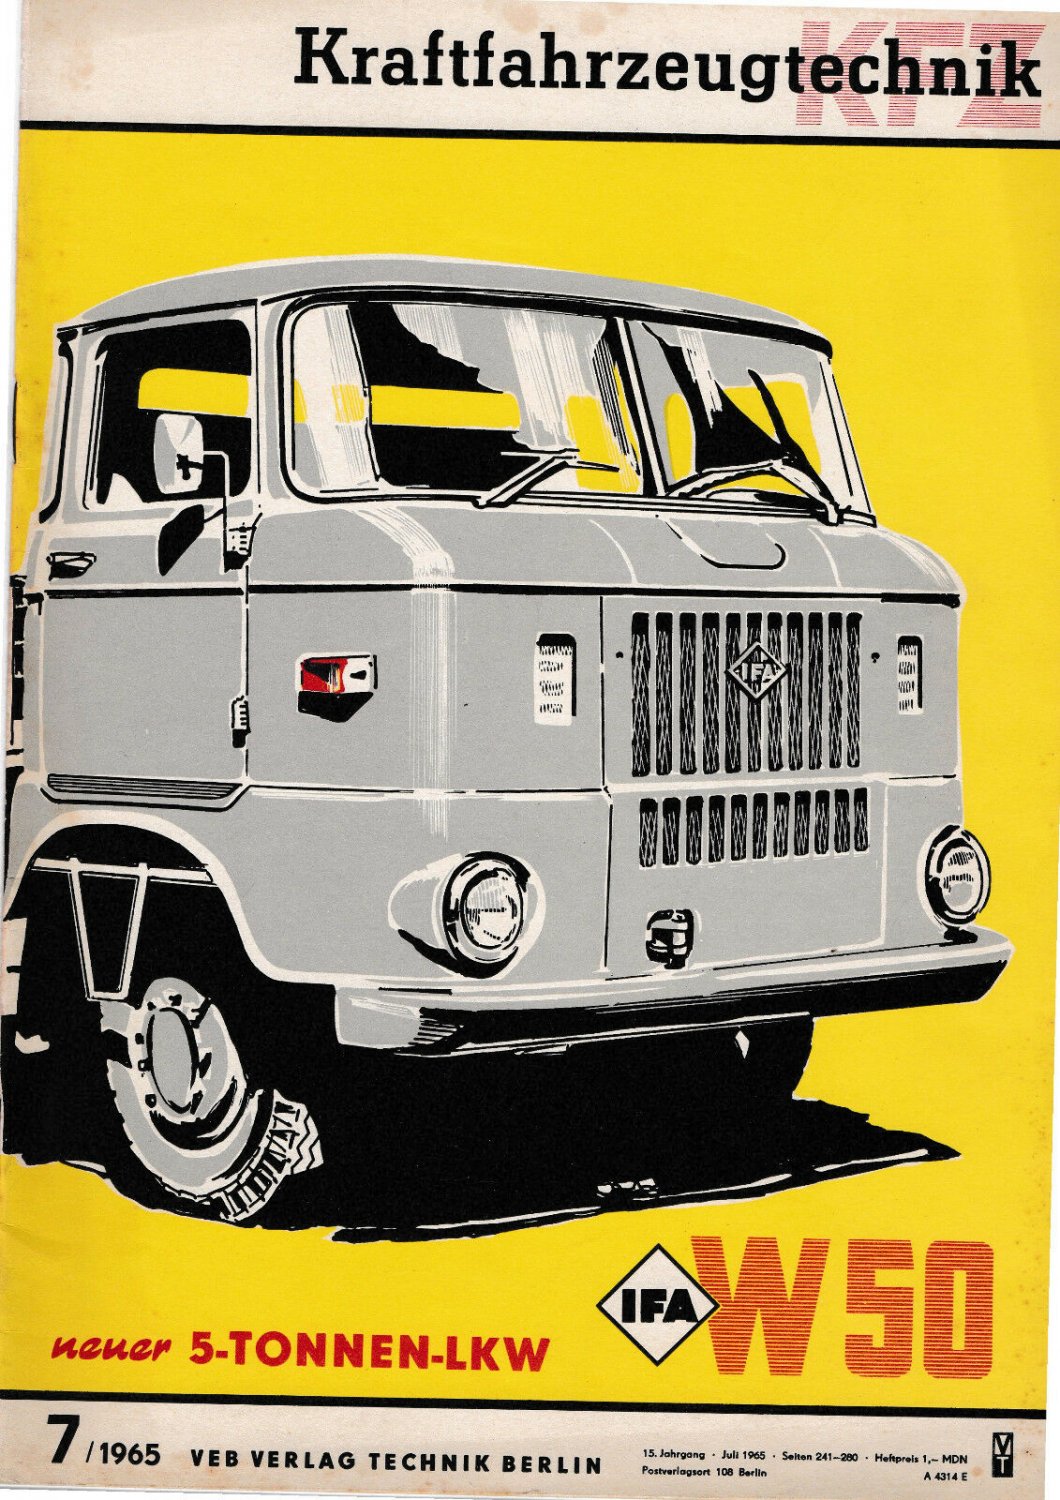 Kraftfahrzeugtechnik 7/1965 Juli 1965 Neuer 5-Tonnen-LKW W50“ (Kammer der  Technik) – Buch antiquarisch kaufen – A02p4gsV01ZZR